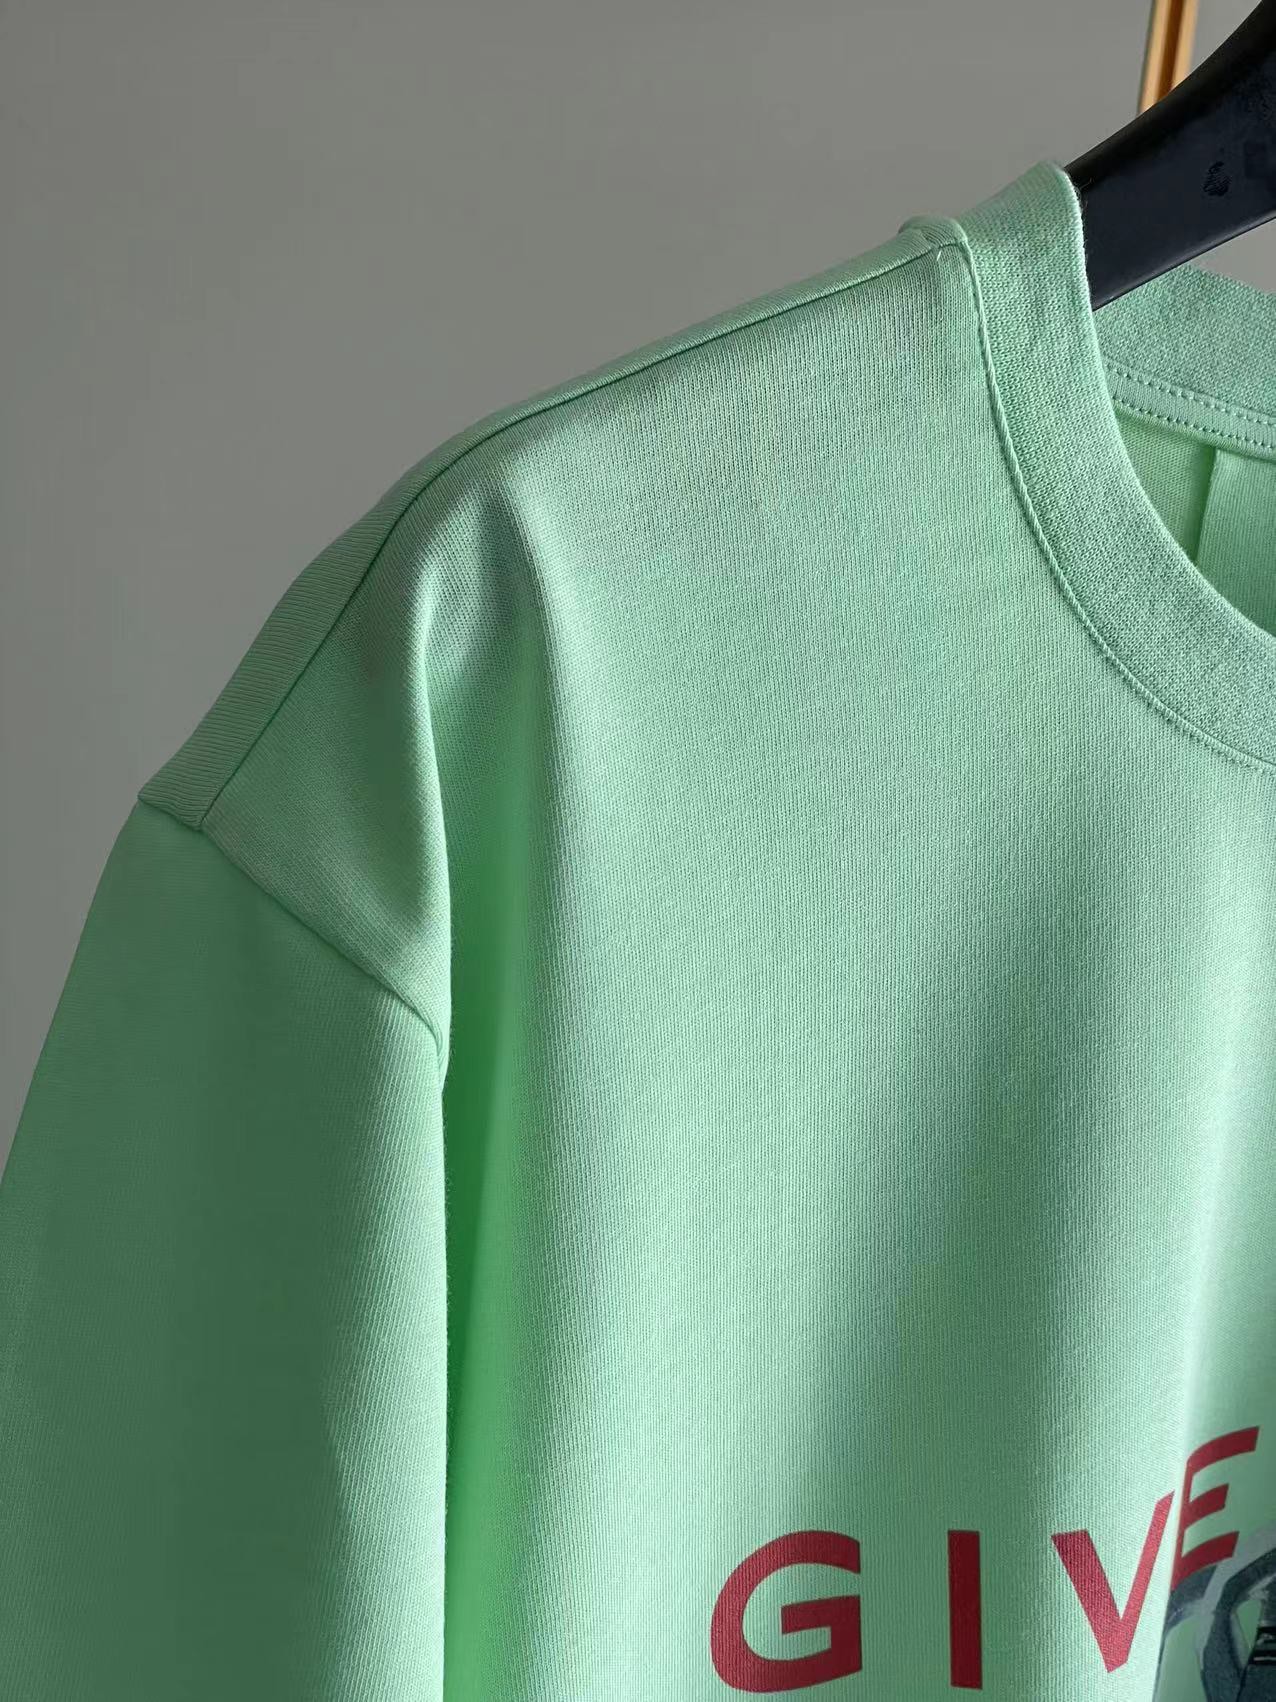 限定セール低価 ジバンシィトートバッグ激安通販 純綿 Tシャツ 半袖 トップス シンプル ロックプリント 大人気 3色可選 グリーン_8